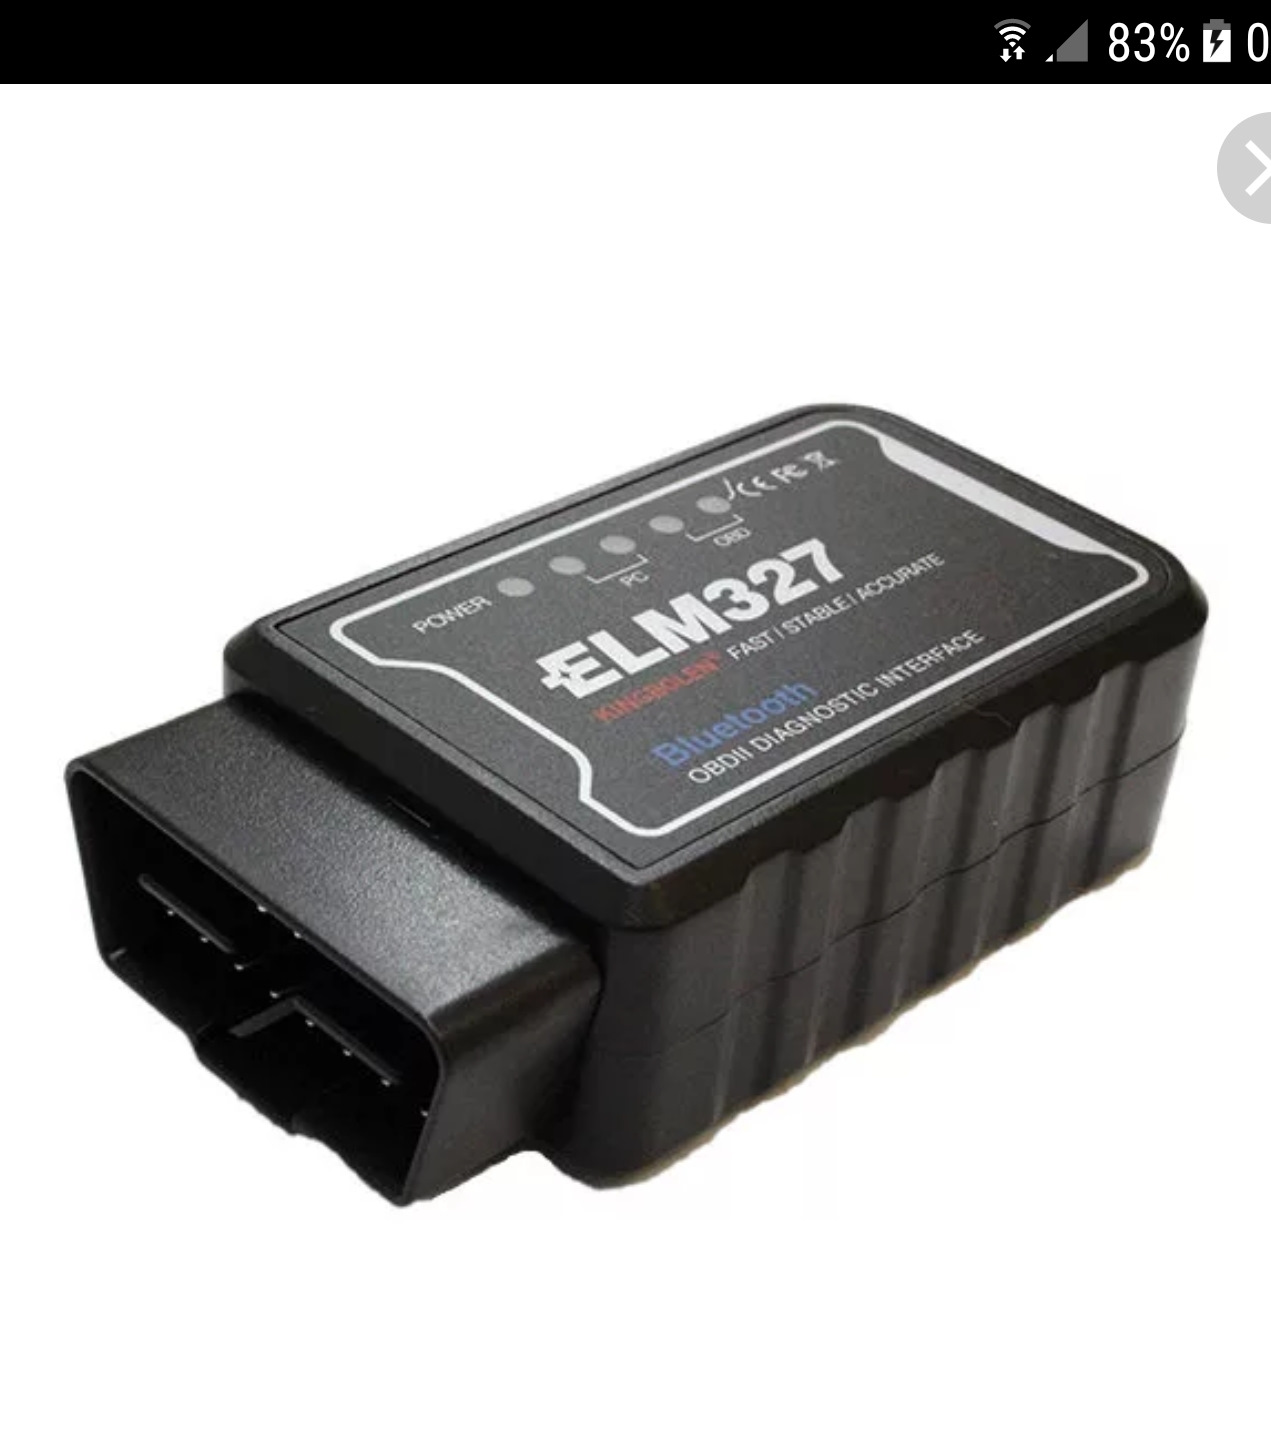 Автосканер elm327 1.5. Bluetooth адаптер(автосканер) Elm 327 Mini OBD II. OBD 2 адаптер elm327. Диагностический адаптер elm327 Bluetooth. Елм 327 v1.5.